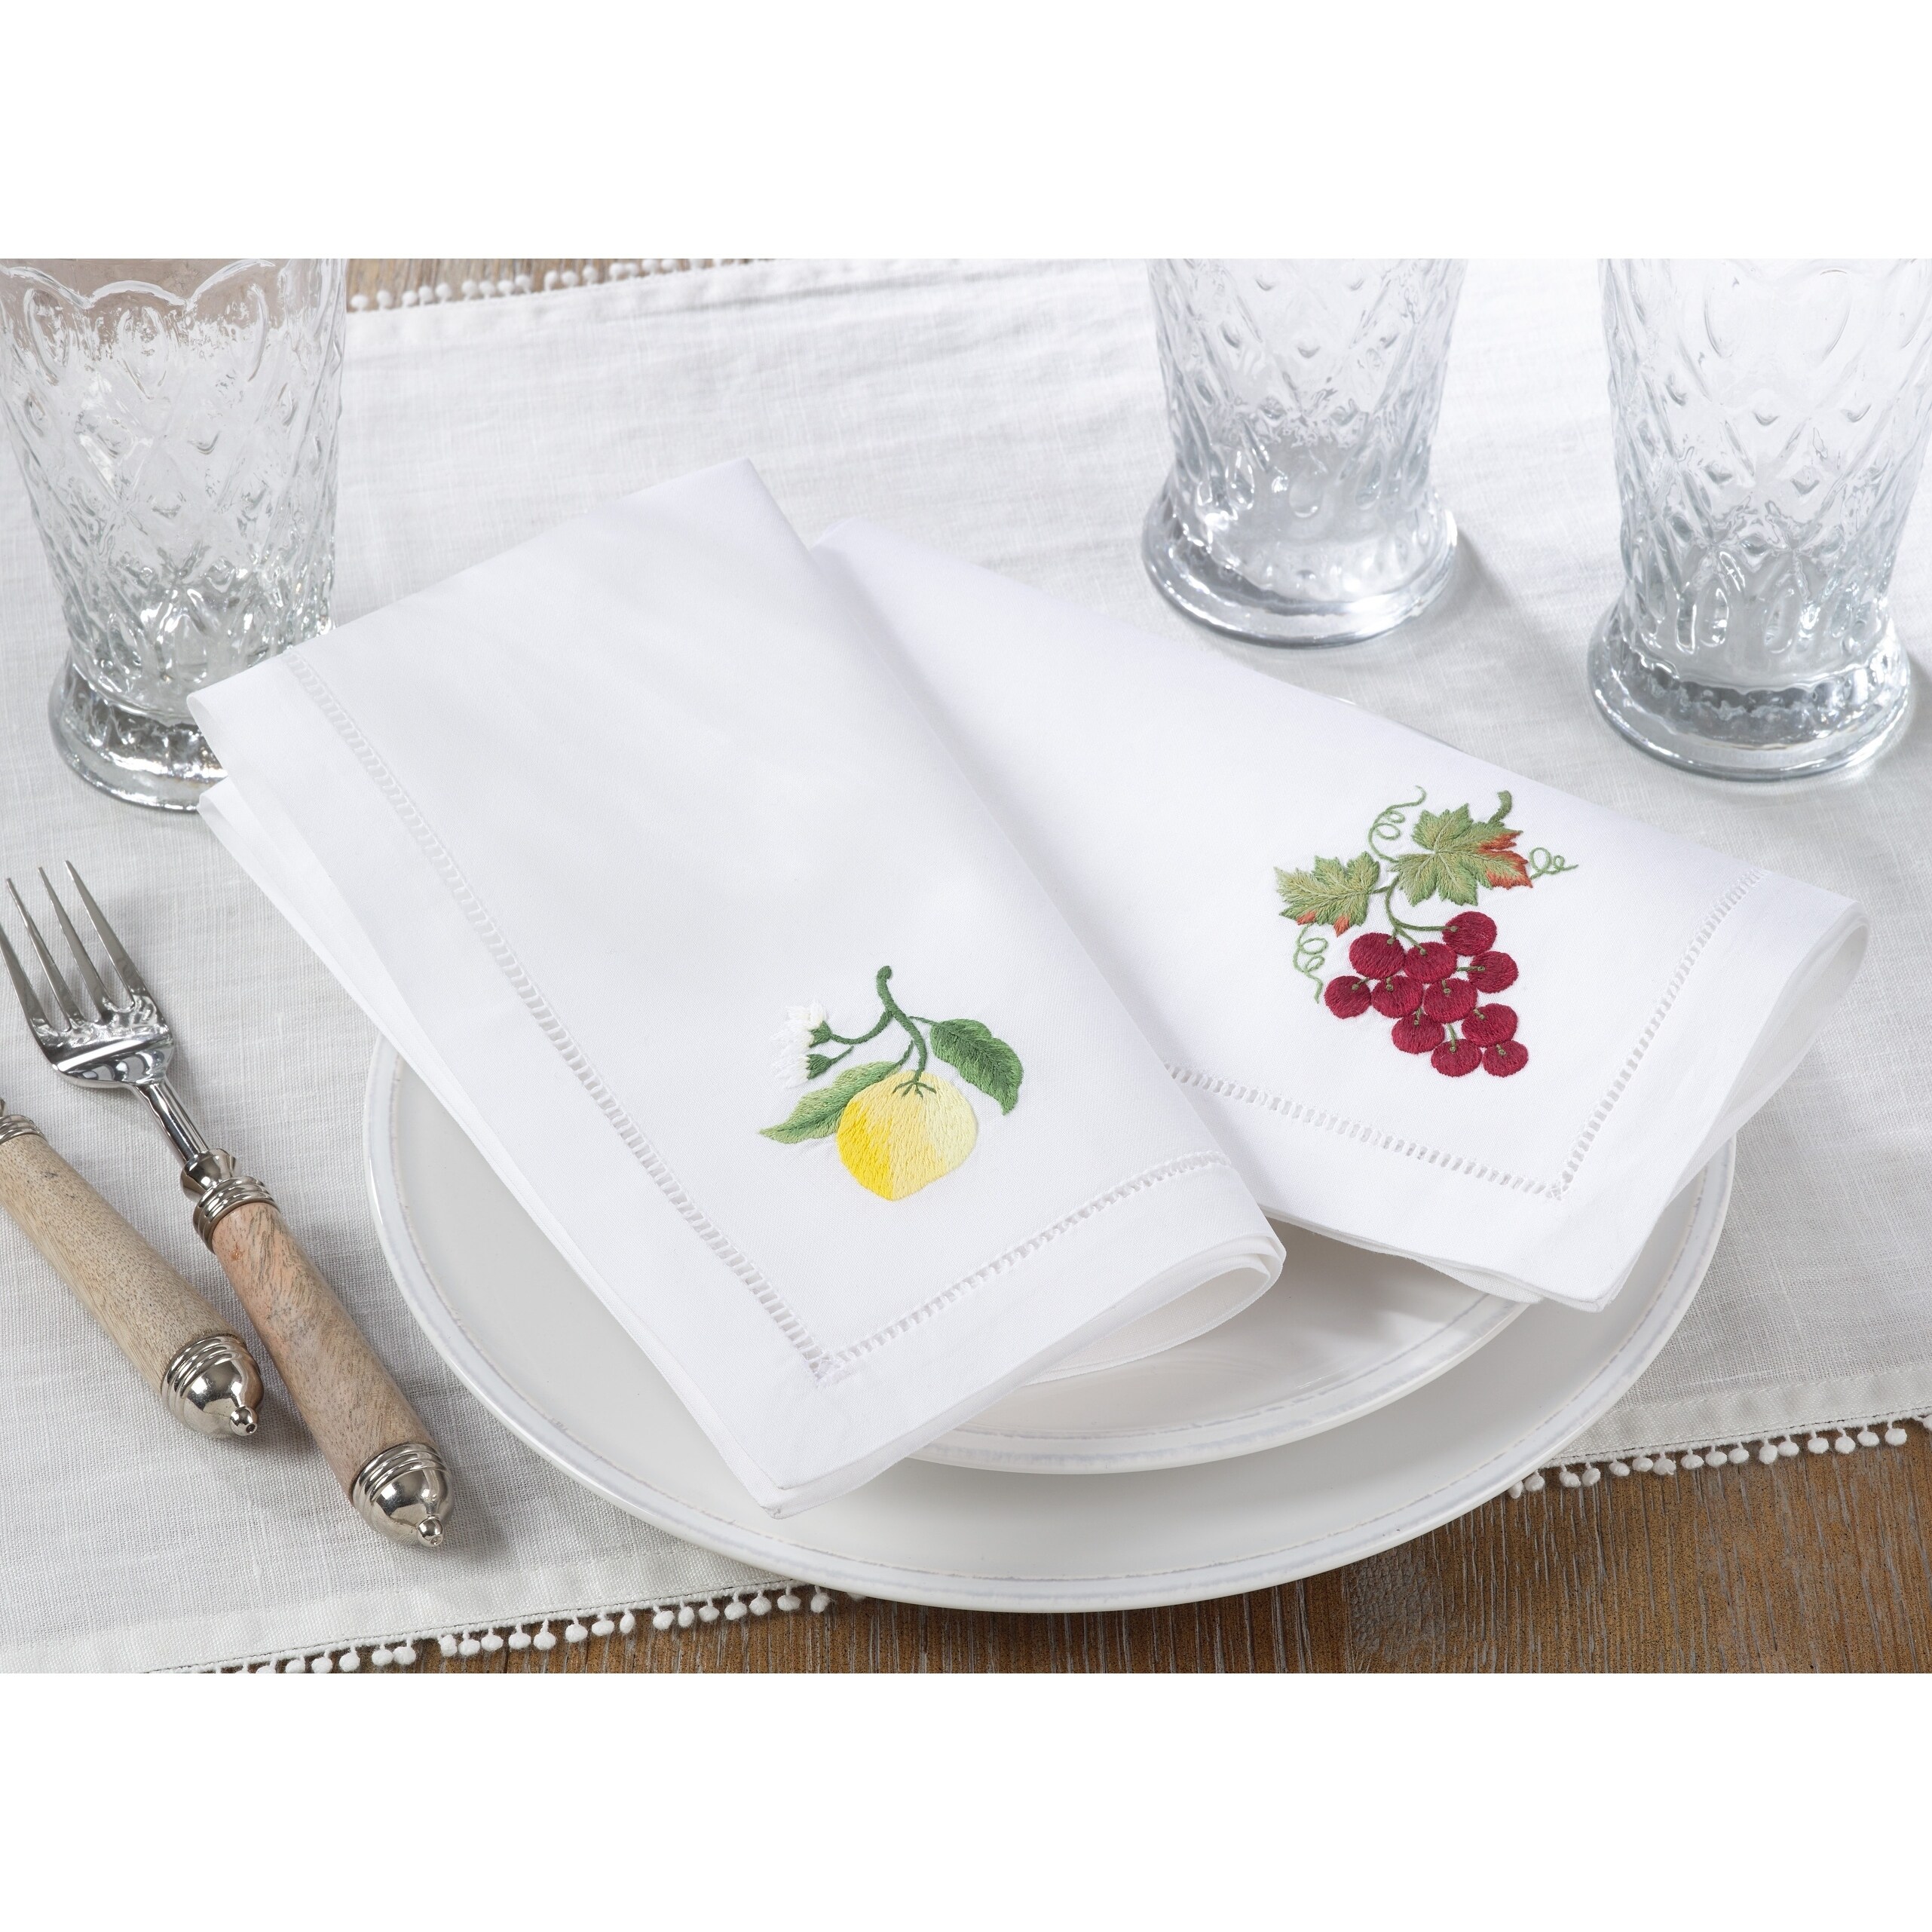 show original title Details about   Tablecloth Table Napkins Rectangular x 6 people Cotton Lemon 